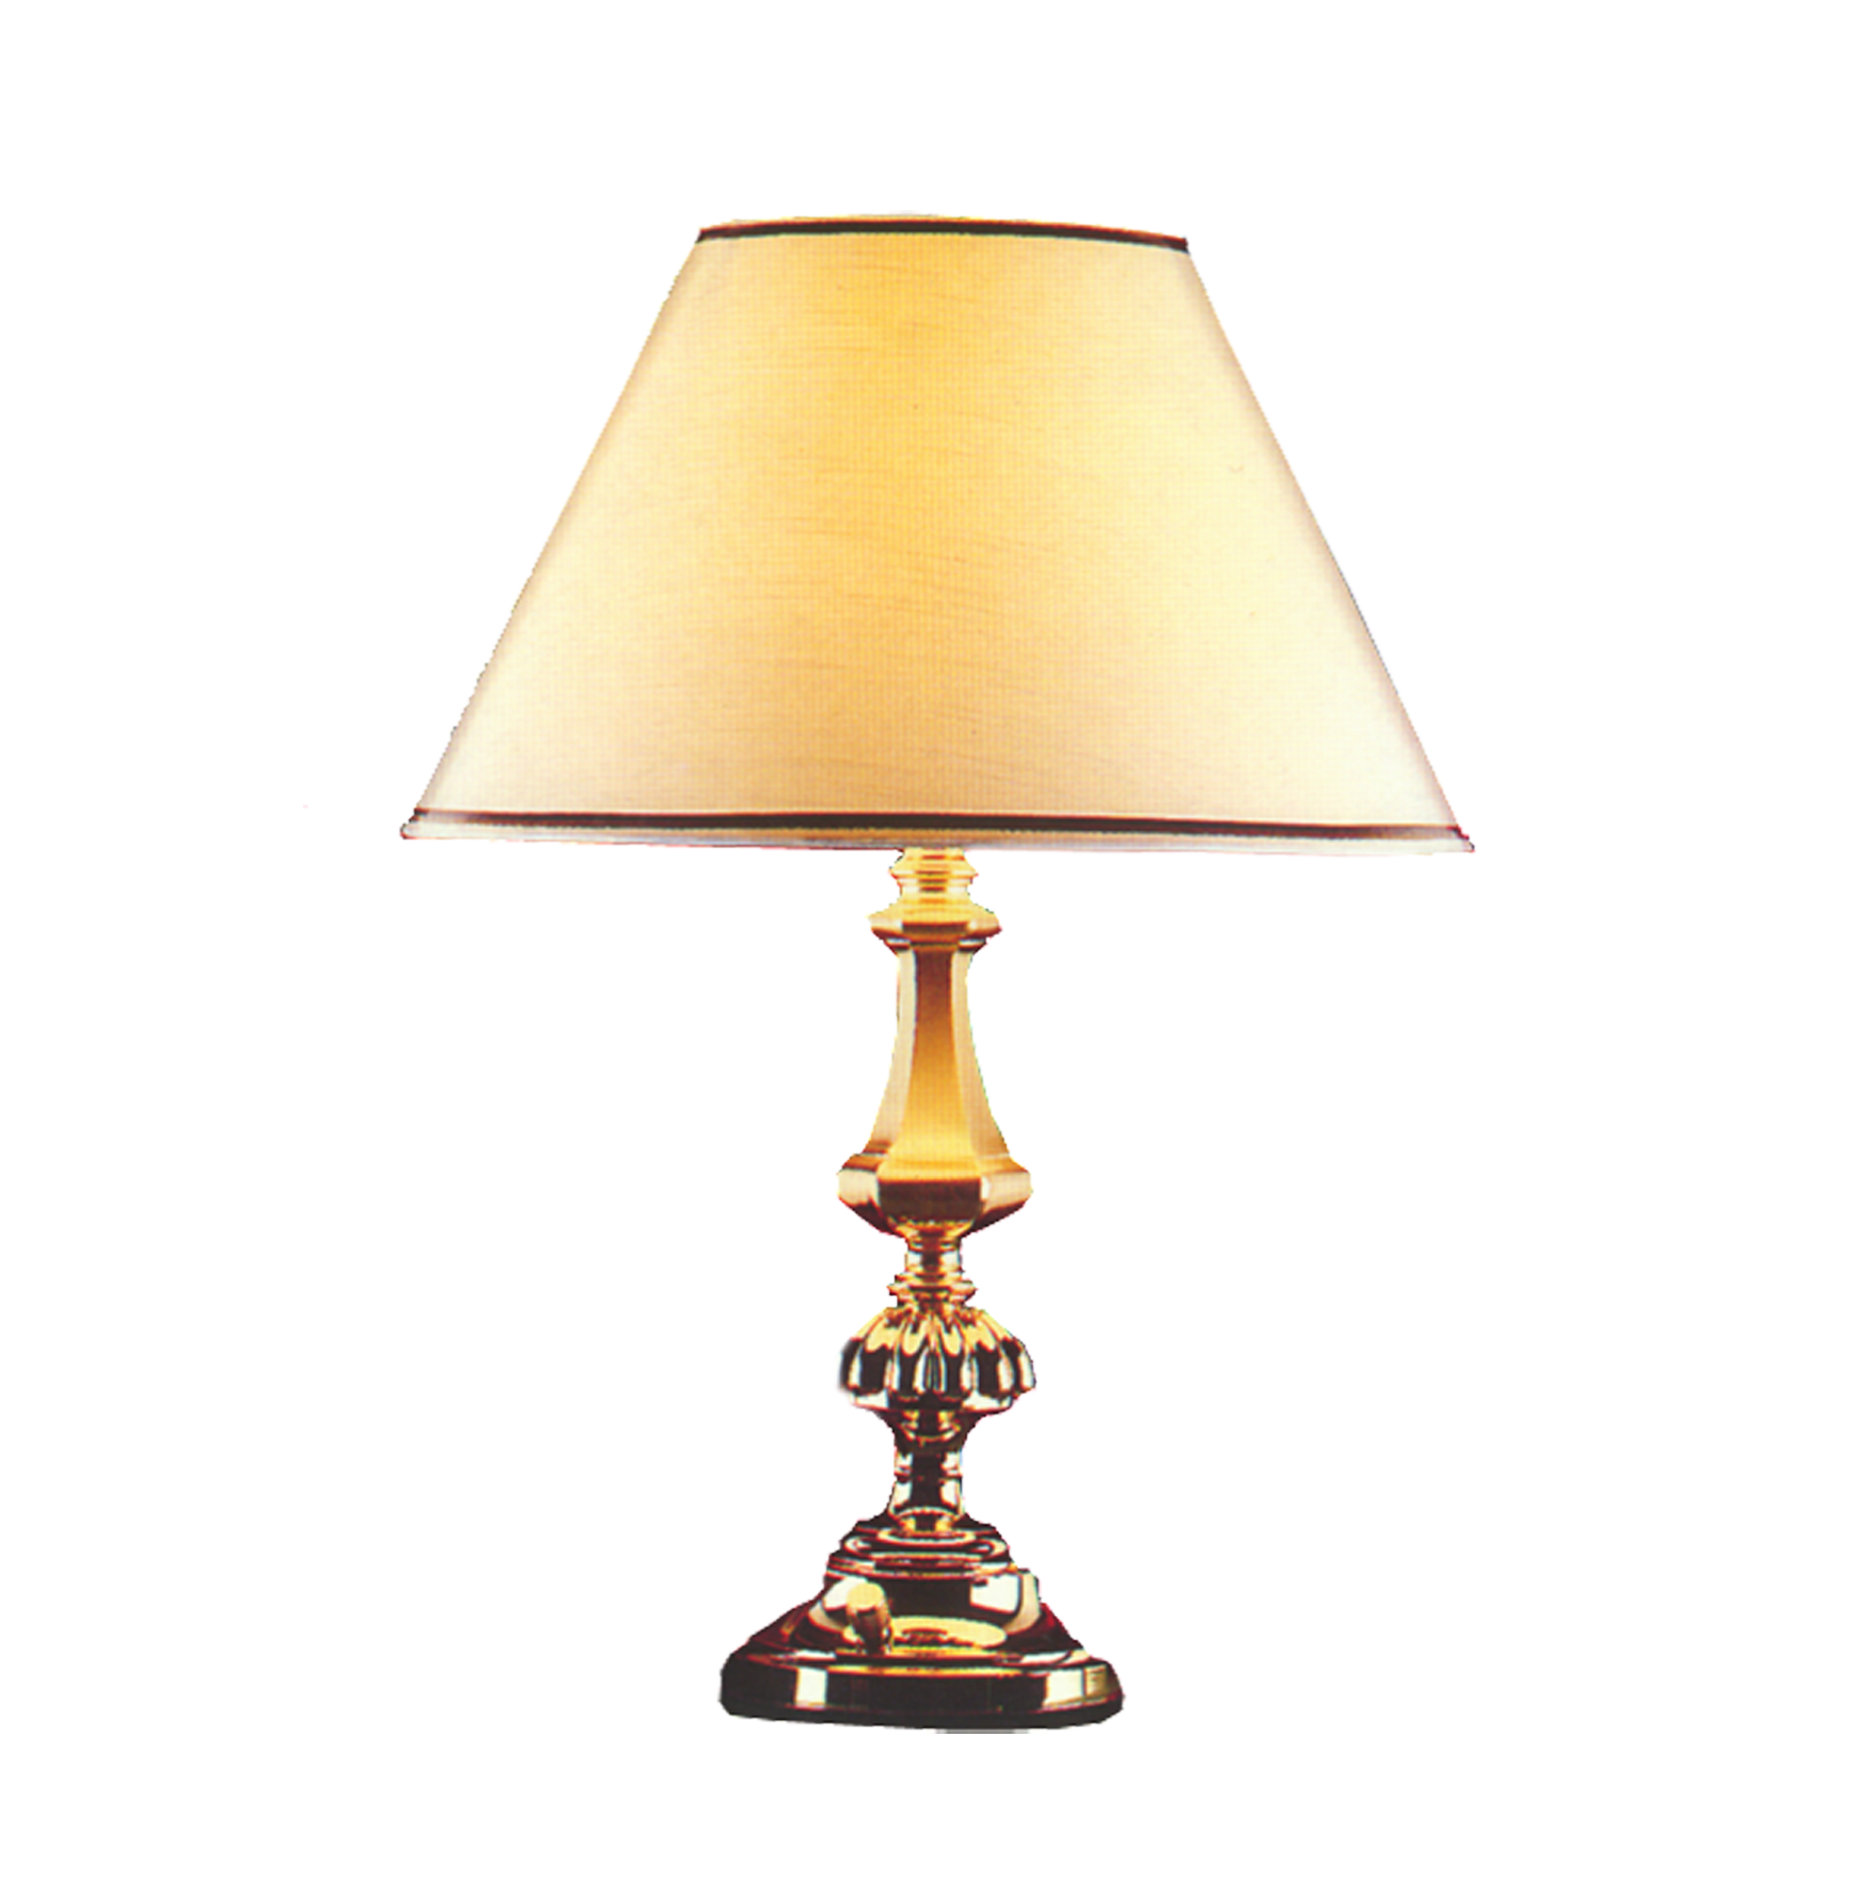 Download Lampe Light De Lamp Bureau Table Exquisite HQ PNG Image